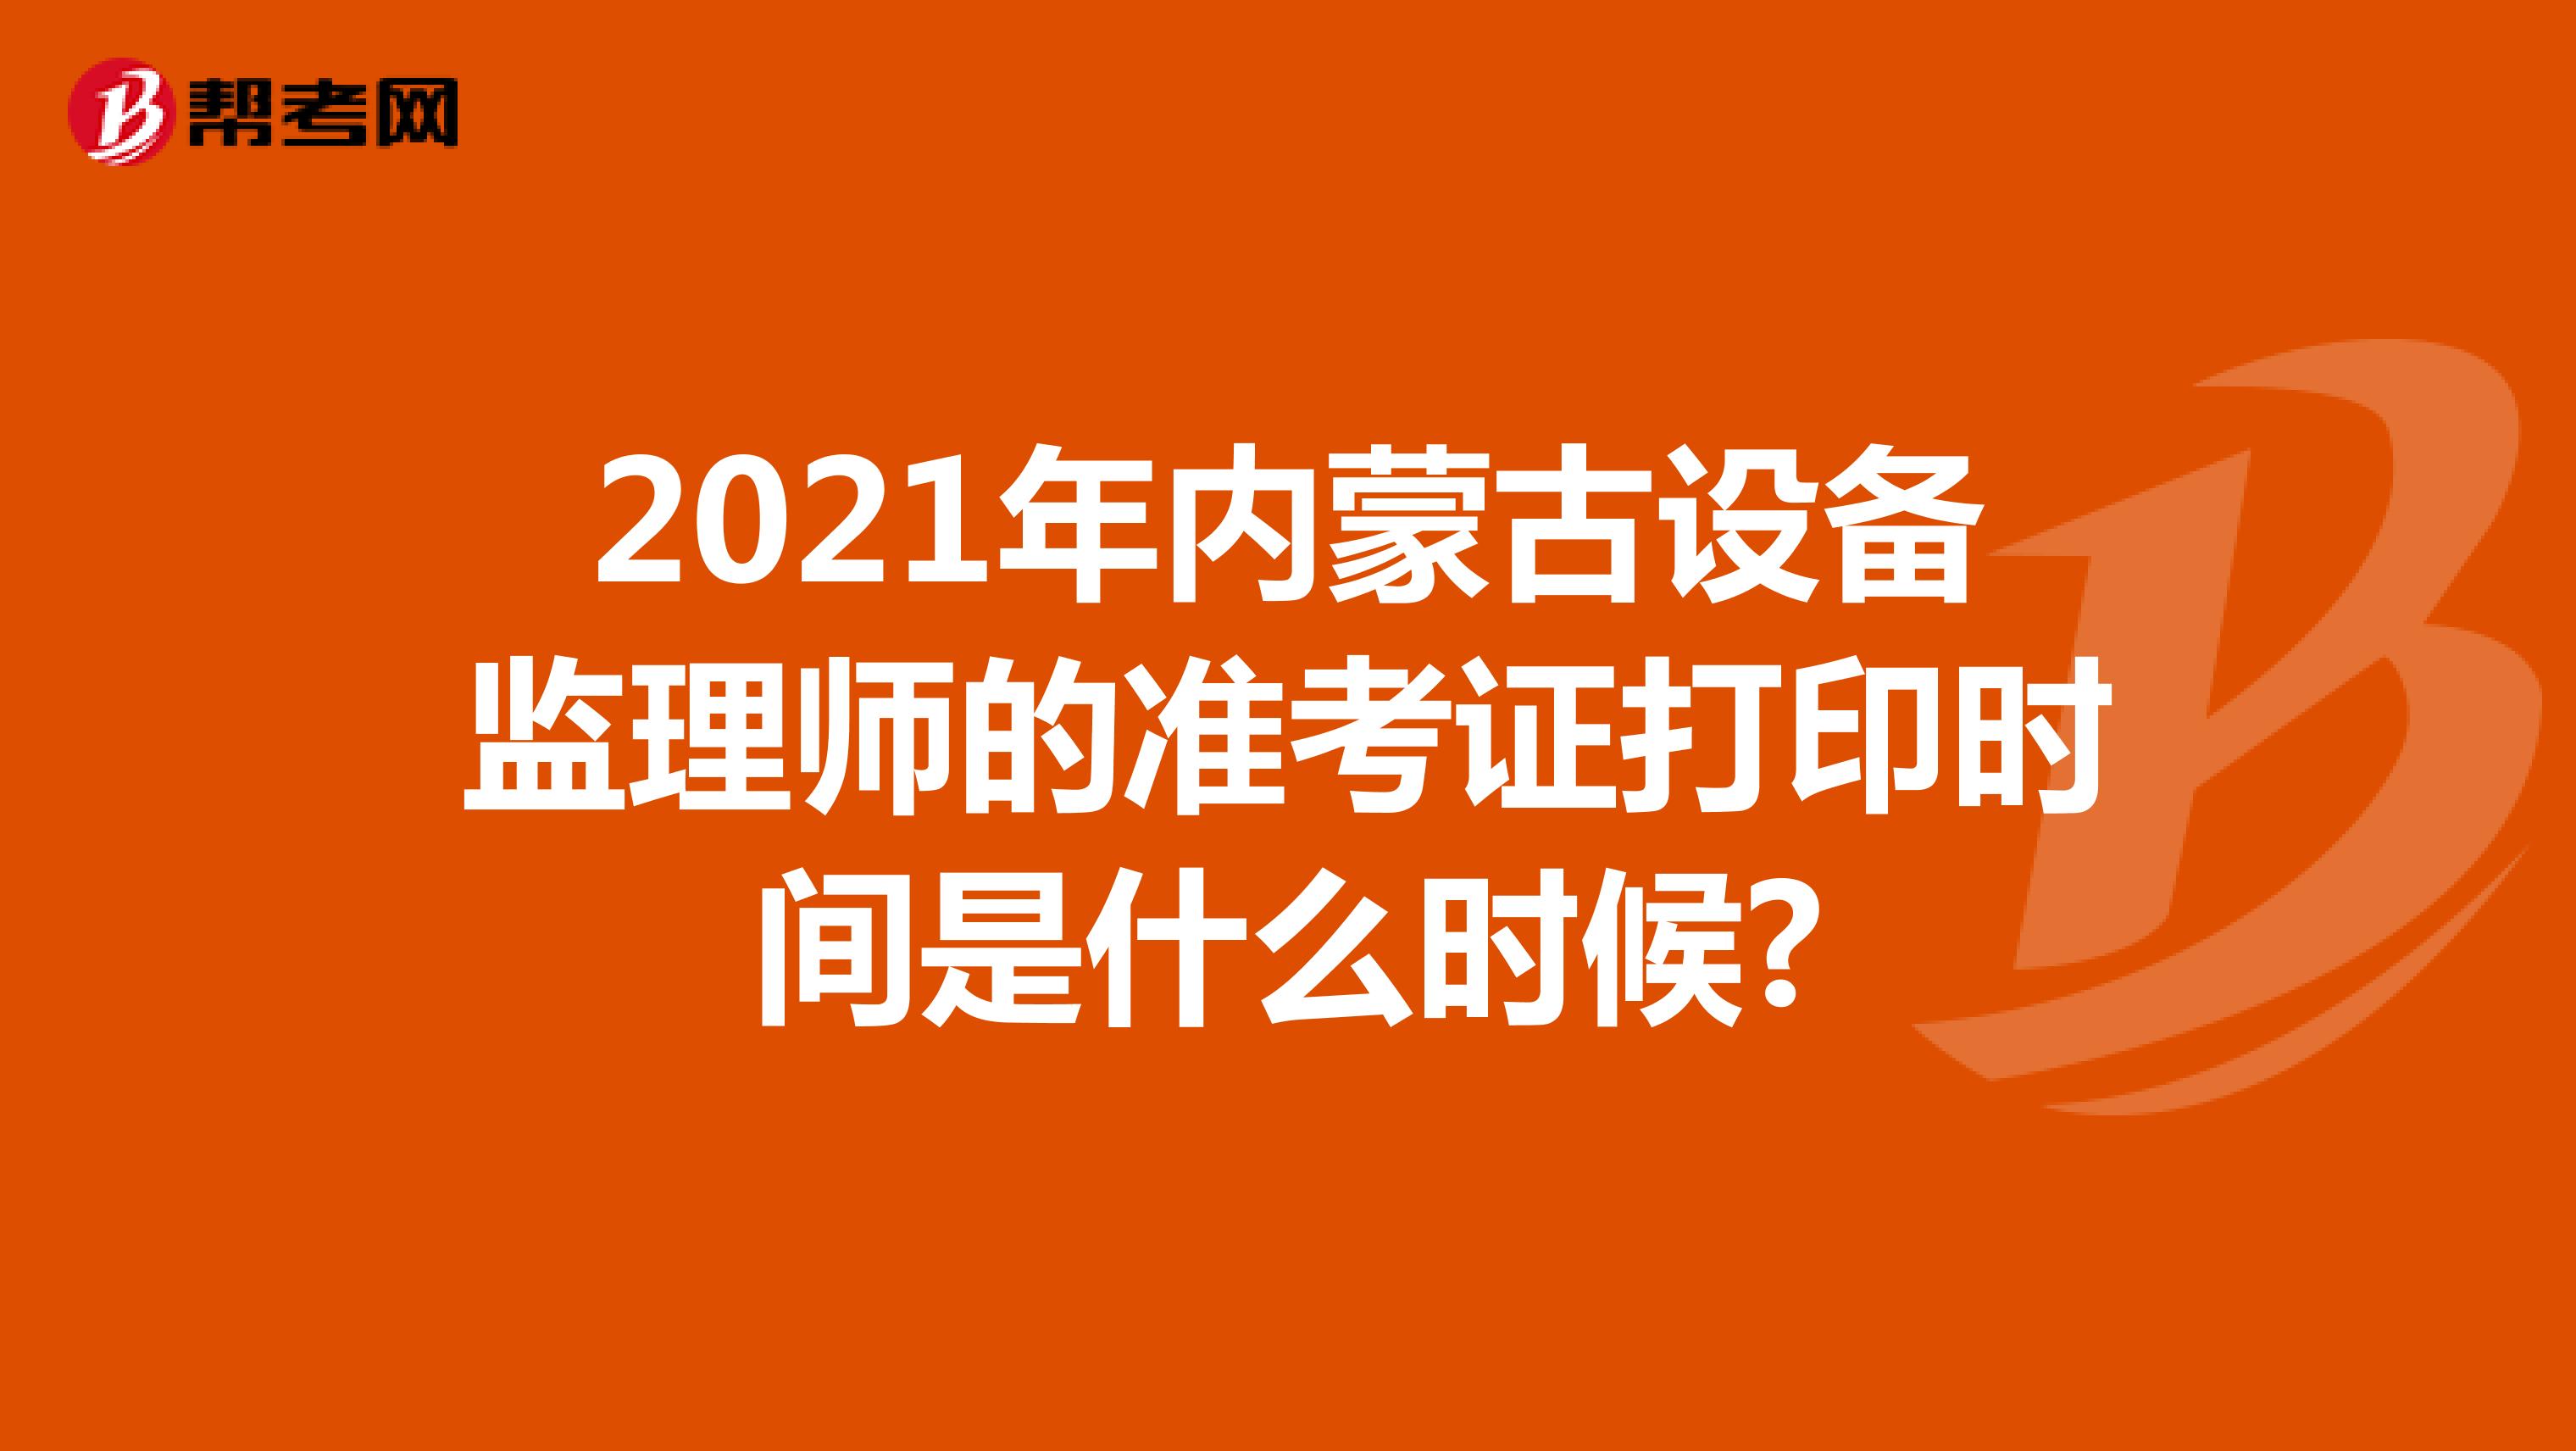 2021年内蒙古设备监理师的准考证打印时间是什么时候?